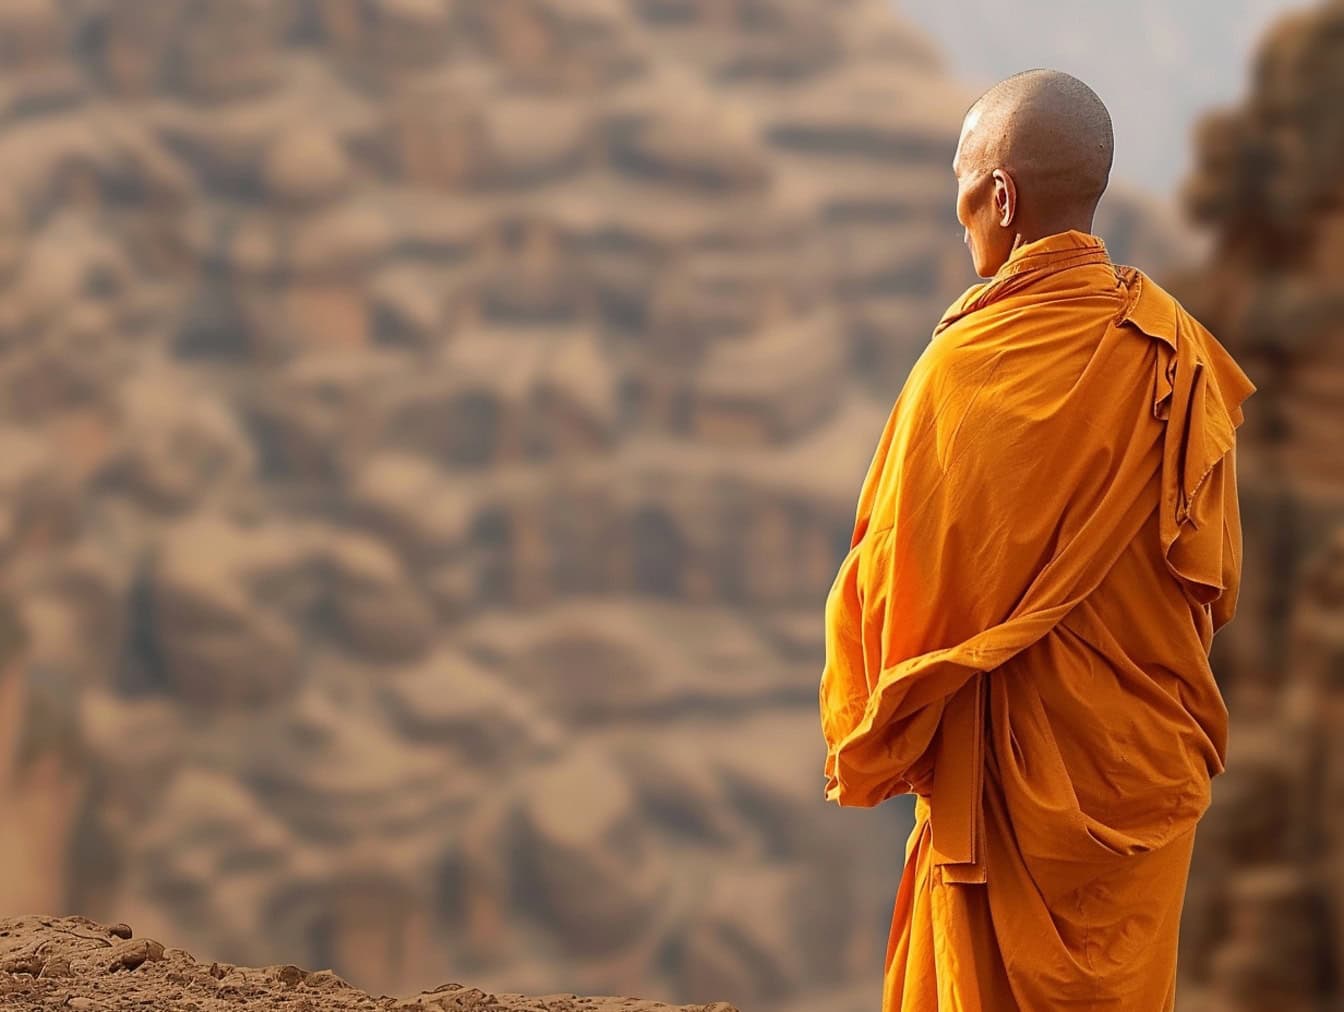 Een boeddhistische monnik met een kaalgeschoren hoofd staat met zijn rug naar hem toe in de woestijn, gekleed in een oranje gewaad